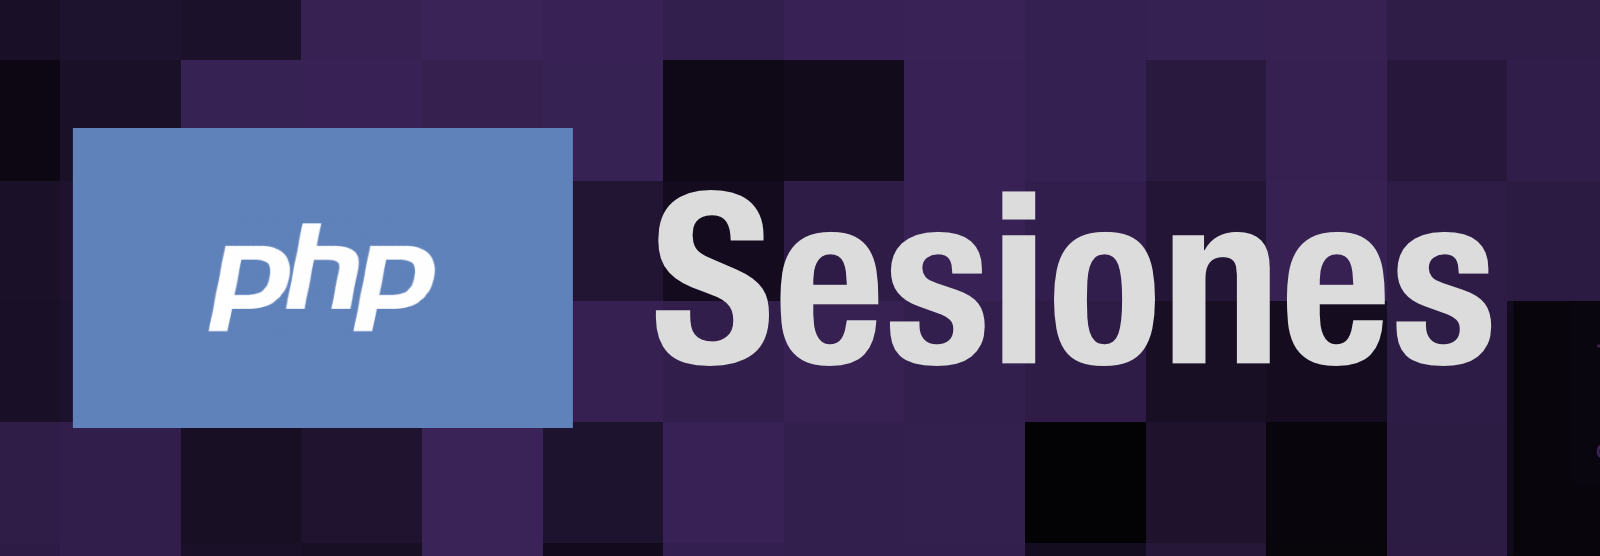 Sesiones en PHP